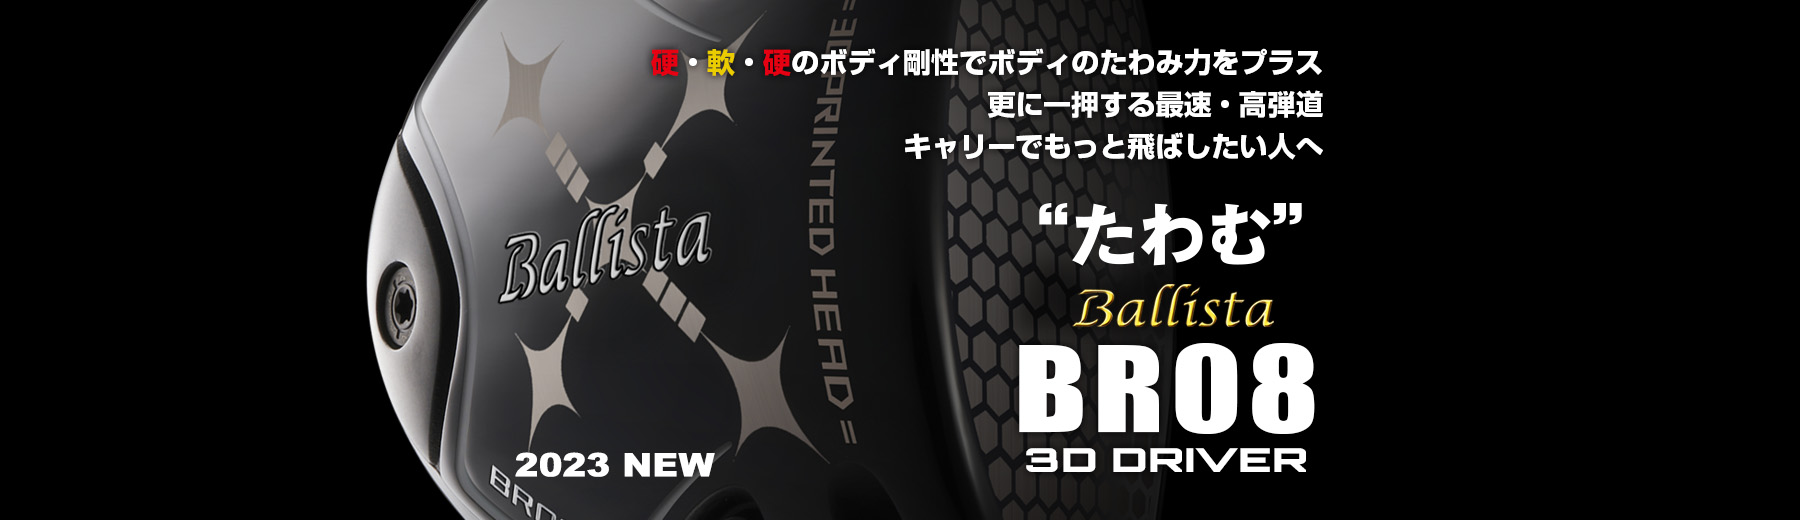 Ballista BR08 3D DRIVER